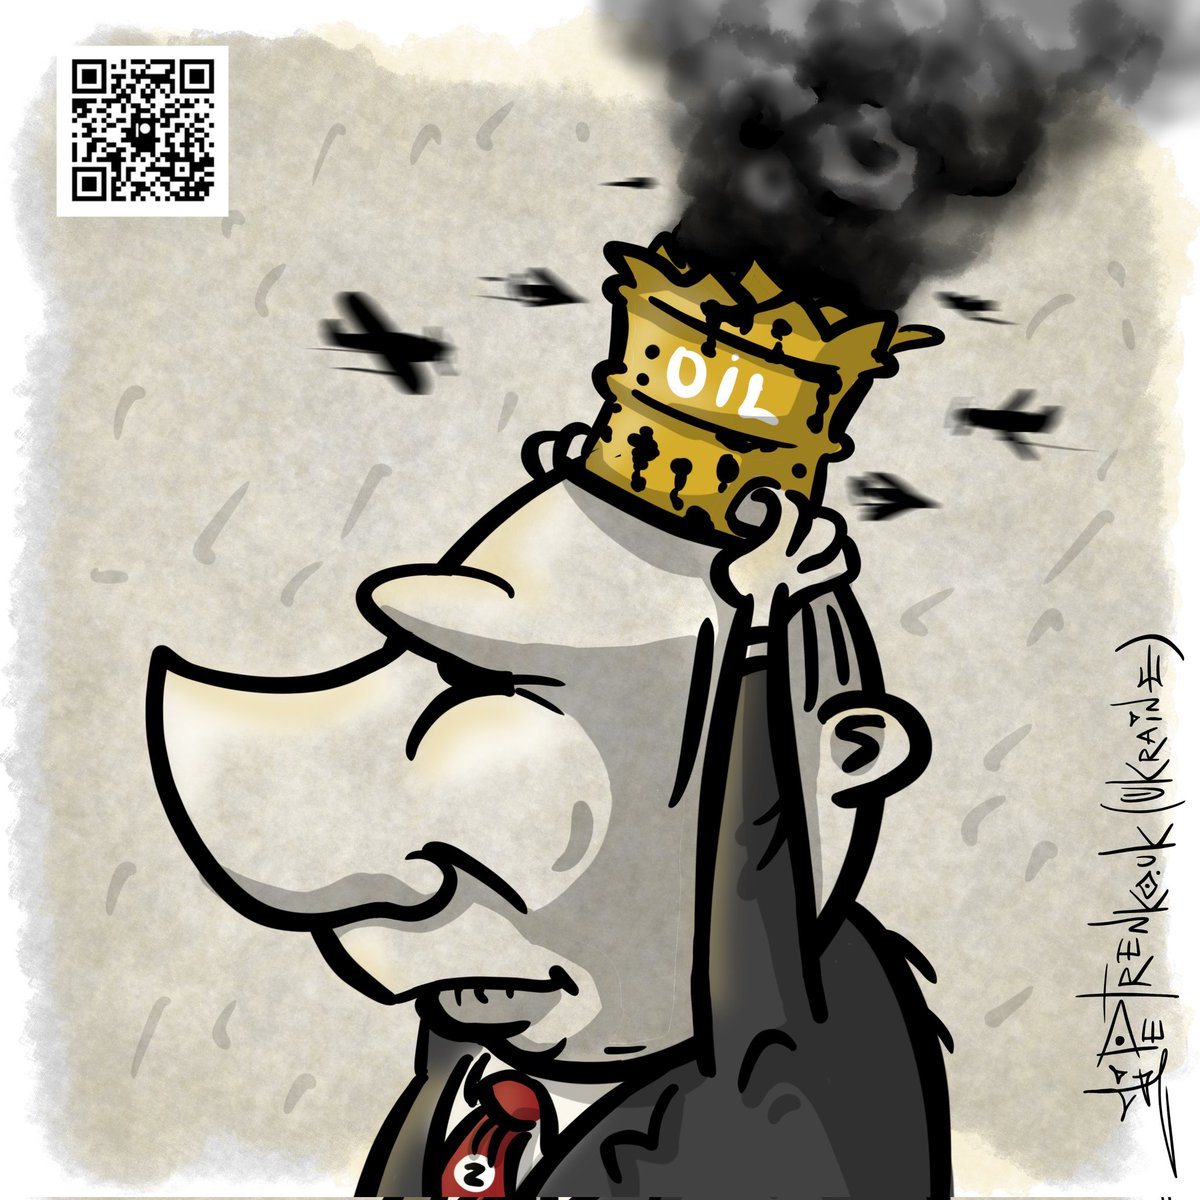 ніколи такого не було і знову на росії горять нафтові заводи... +++++++ Друзі, в мене велике прохання: підпишіться на канал українського художника карикатуриста @PetrenkoAndryi